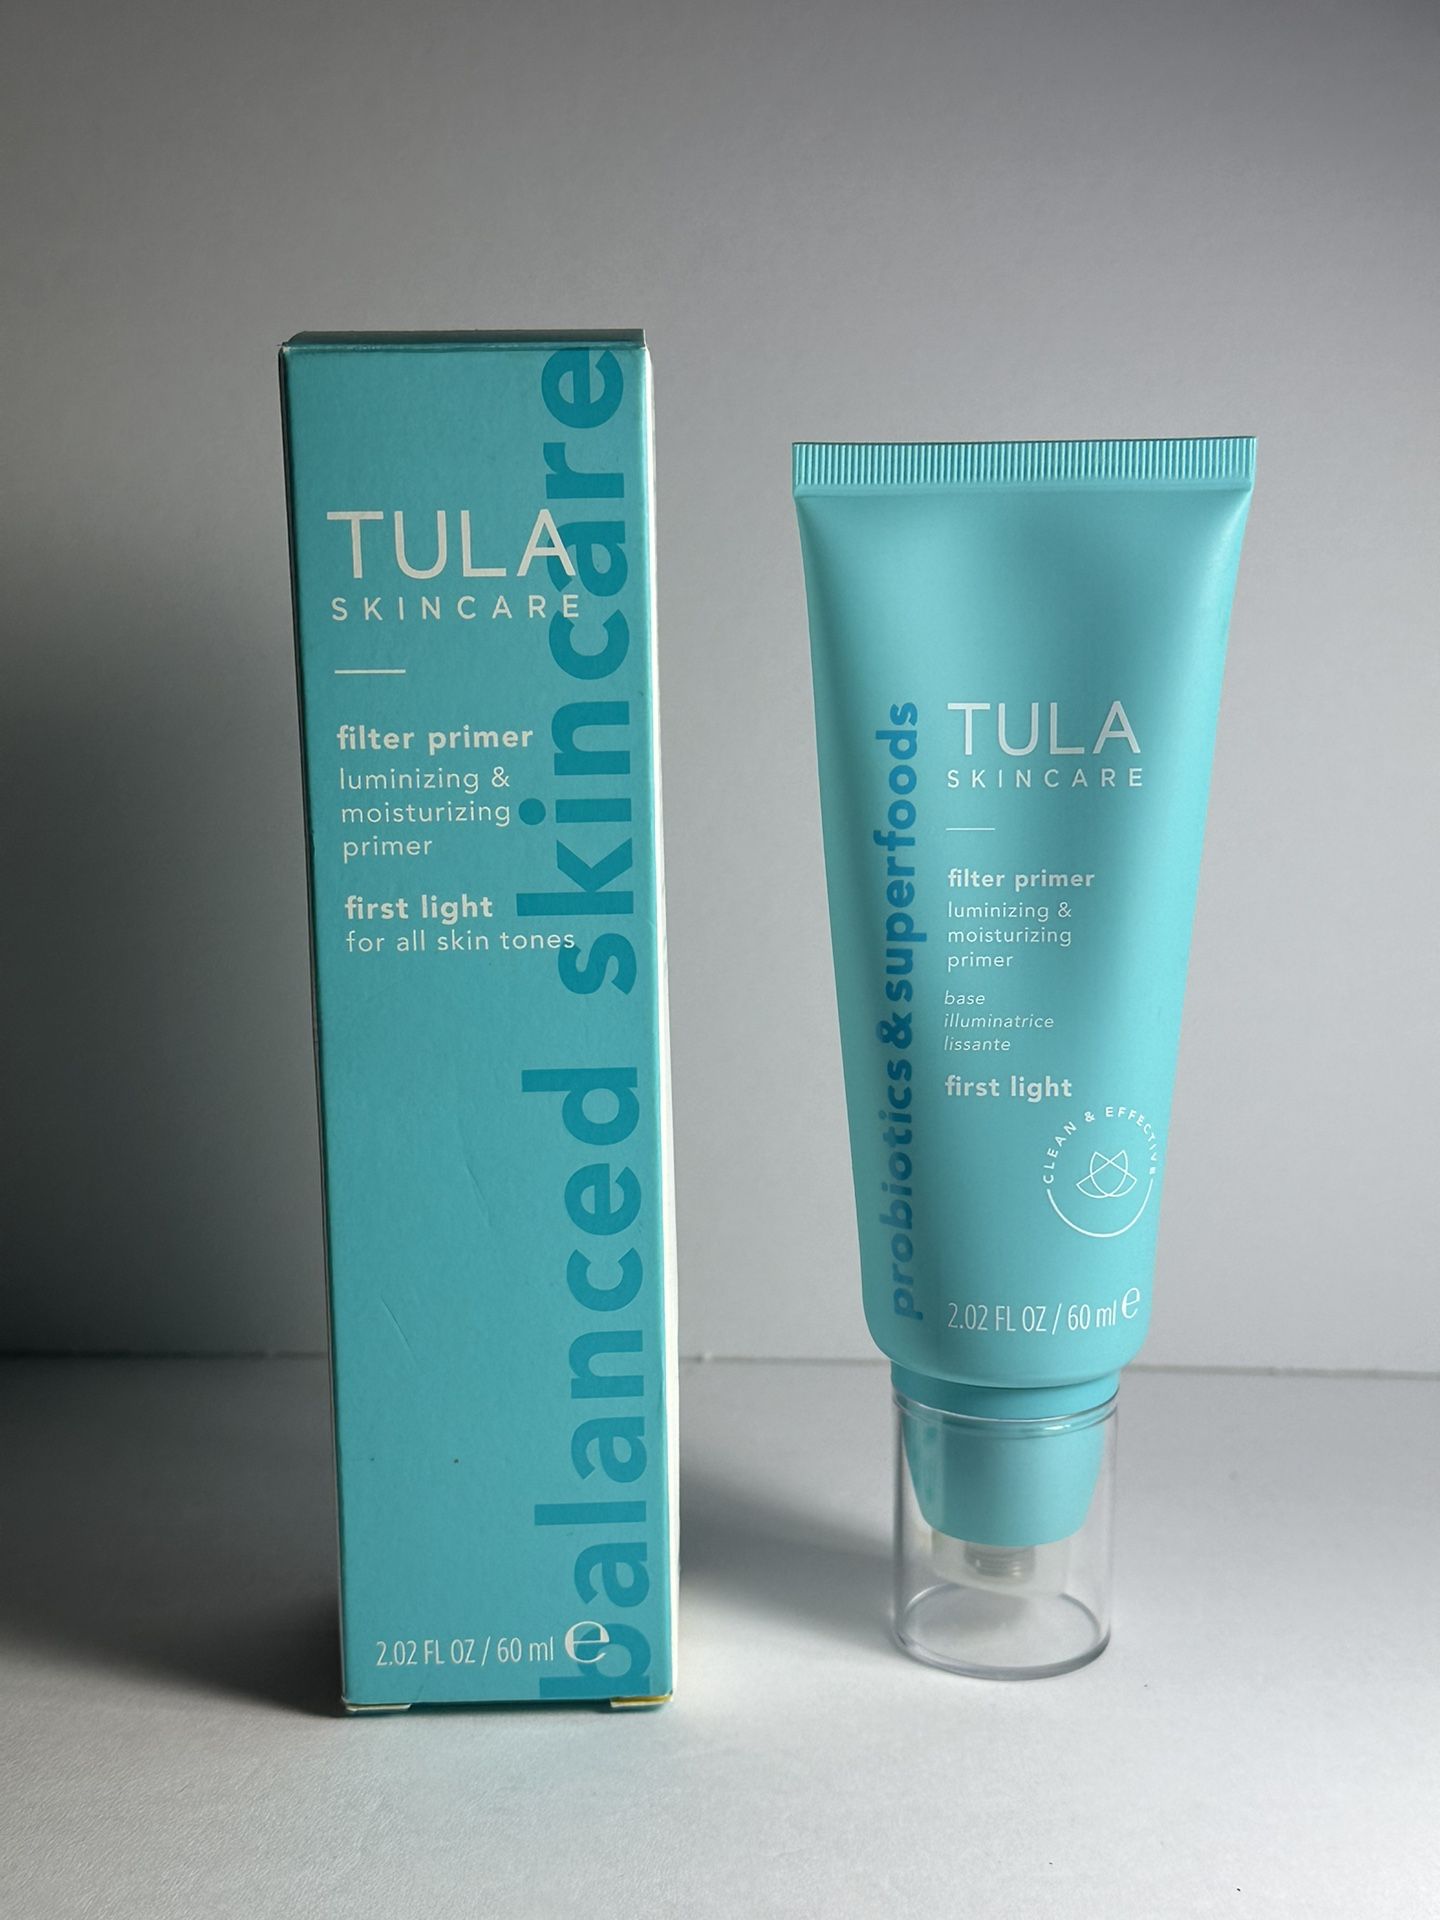 TULA Skincare Filter Primer Blurring & Moisturizing 2.02 FL OZ **NEW